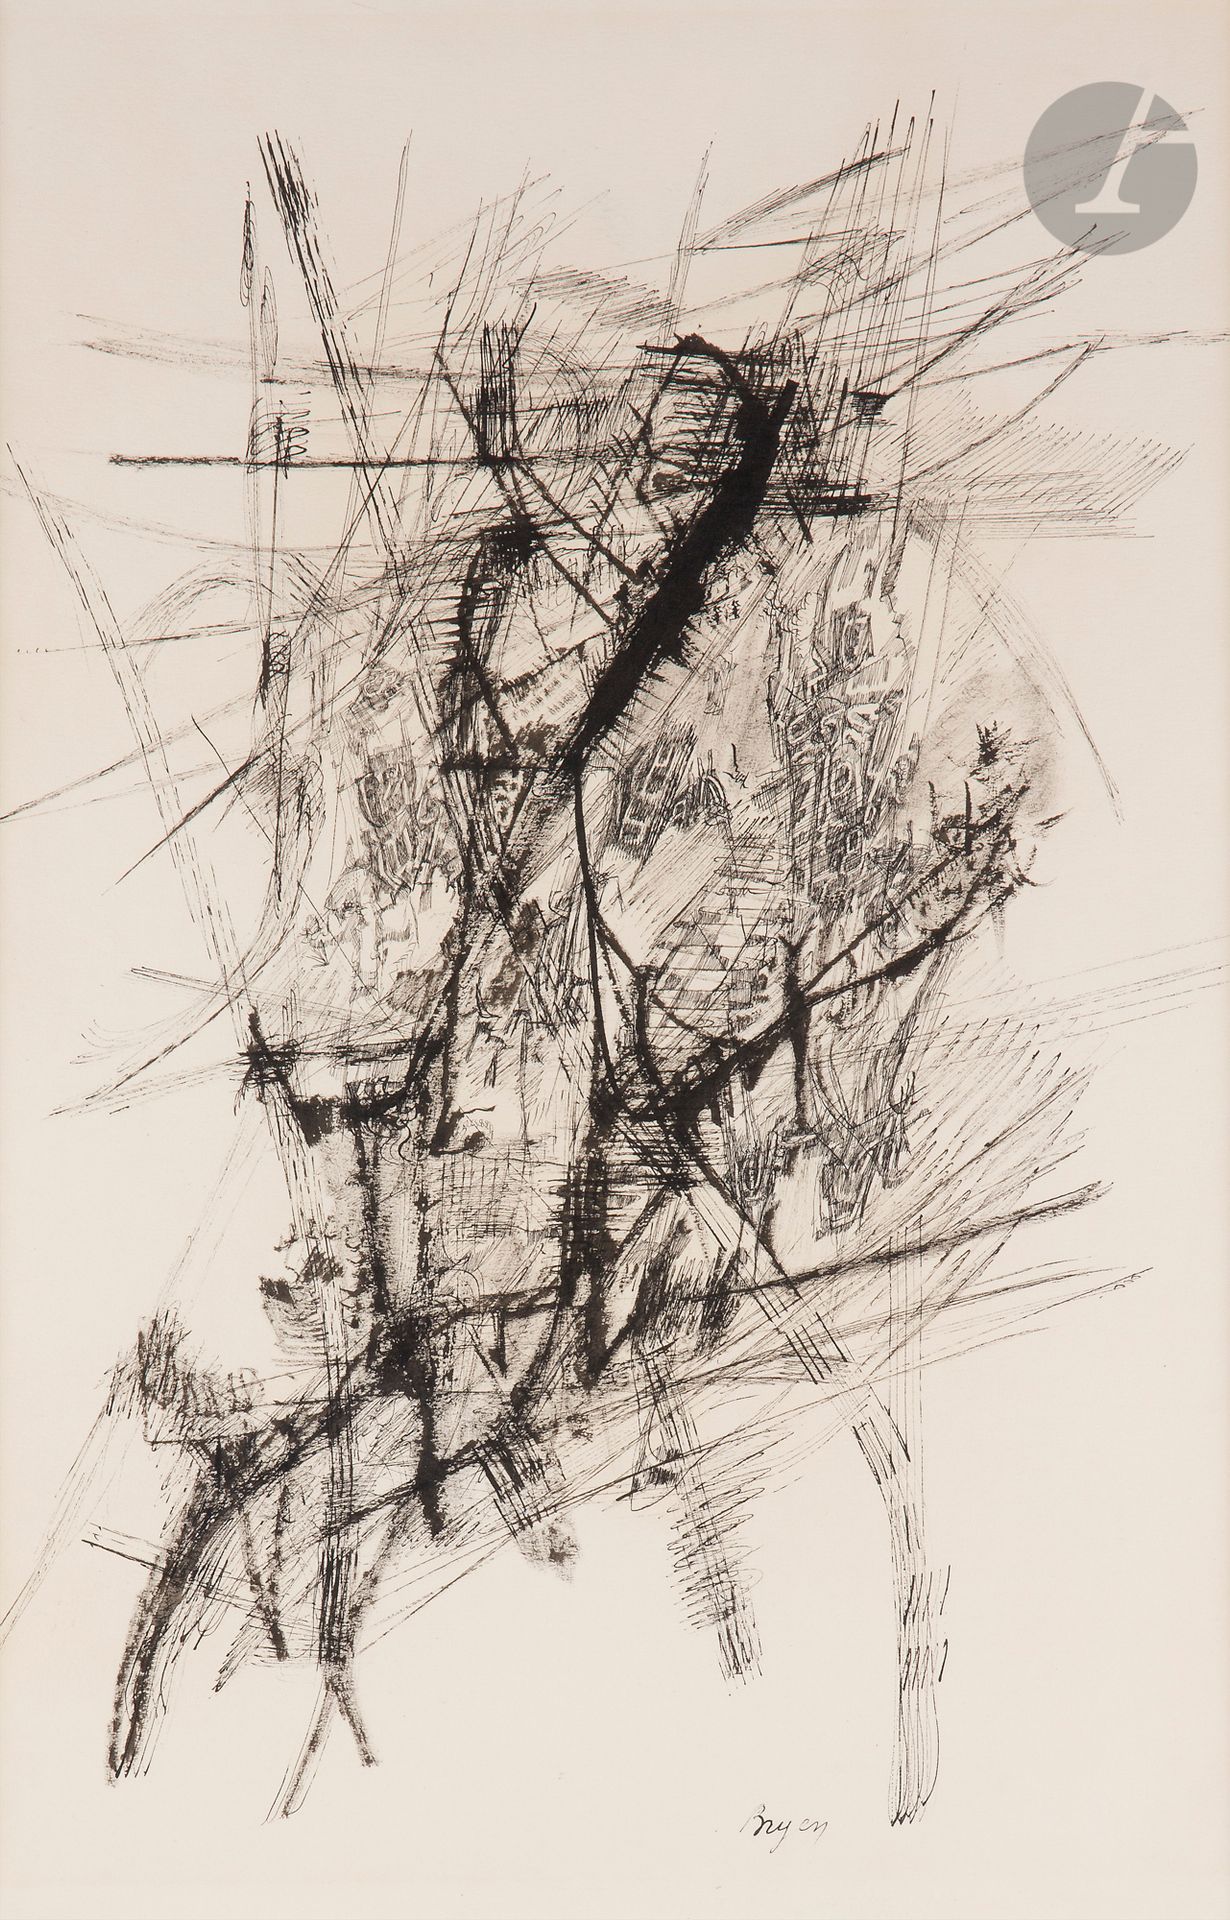 Null 卡米尔-布莱恩(1907-1977)
创作, 1955
墨水。
签名在脚下。
50 x 32 cm

出处 : 
- Édouard Loeb画廊，巴&hellip;